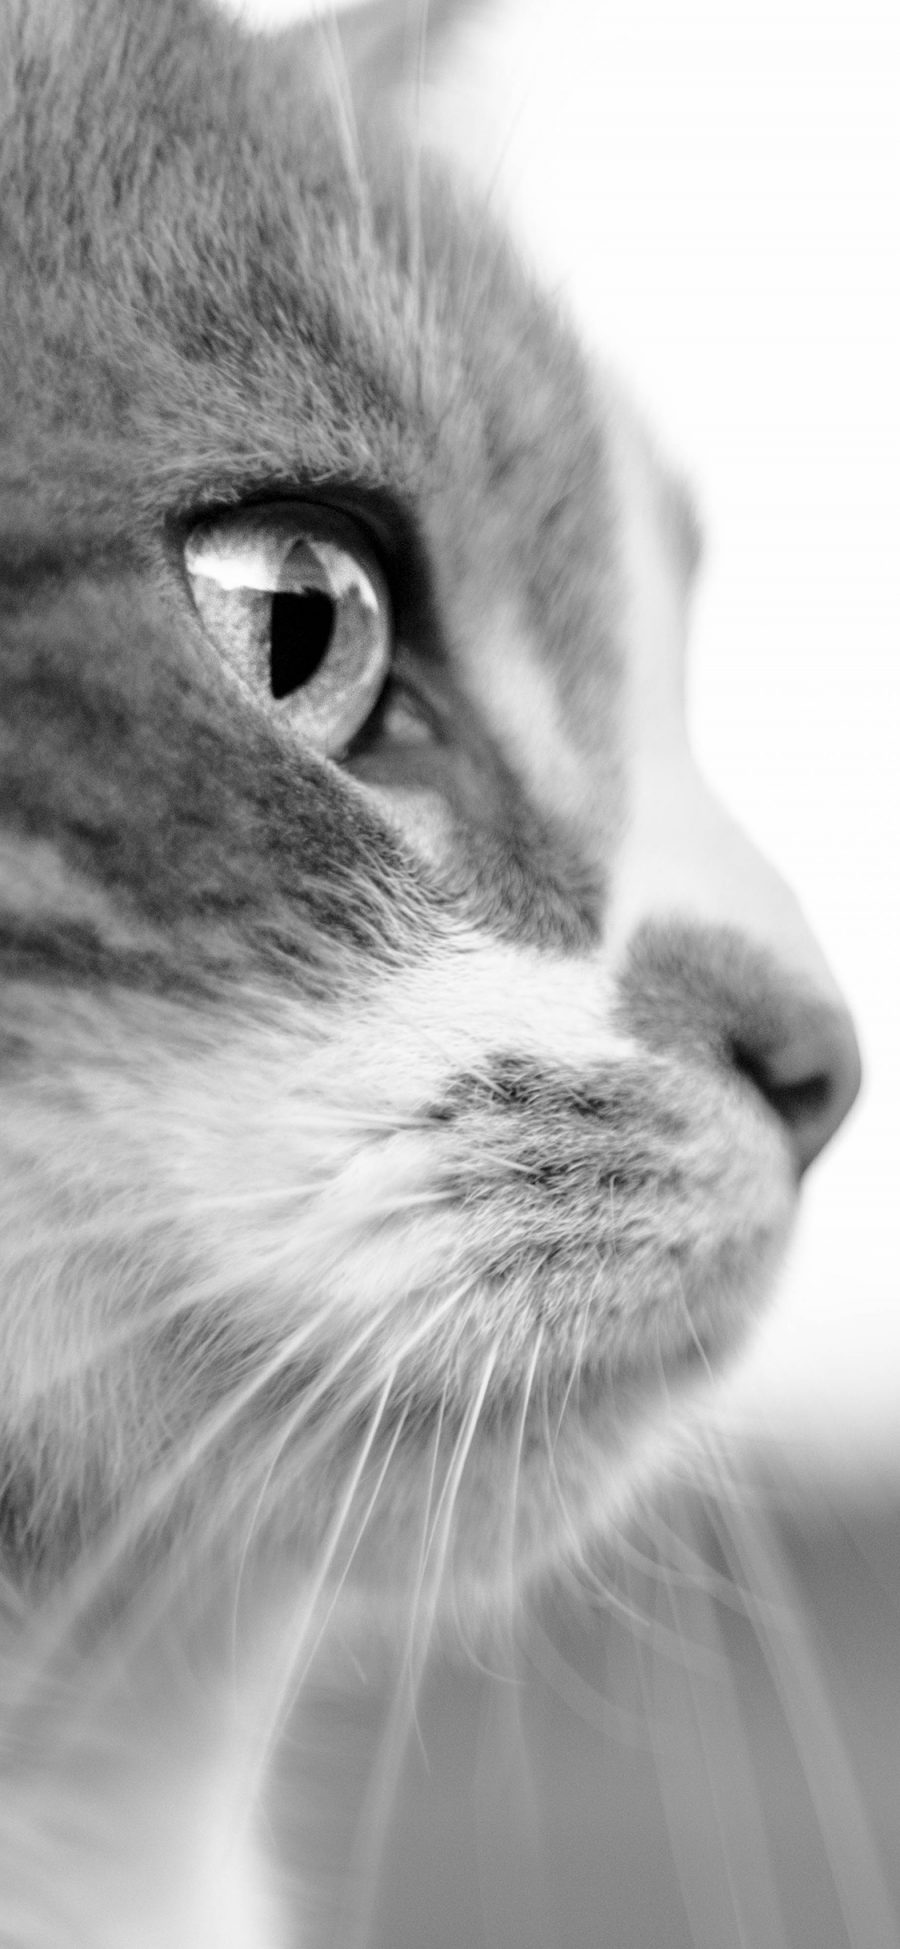 [2436×1125]猫咪 灰色 侧脸 宠物 喵星人 苹果手机壁纸图片